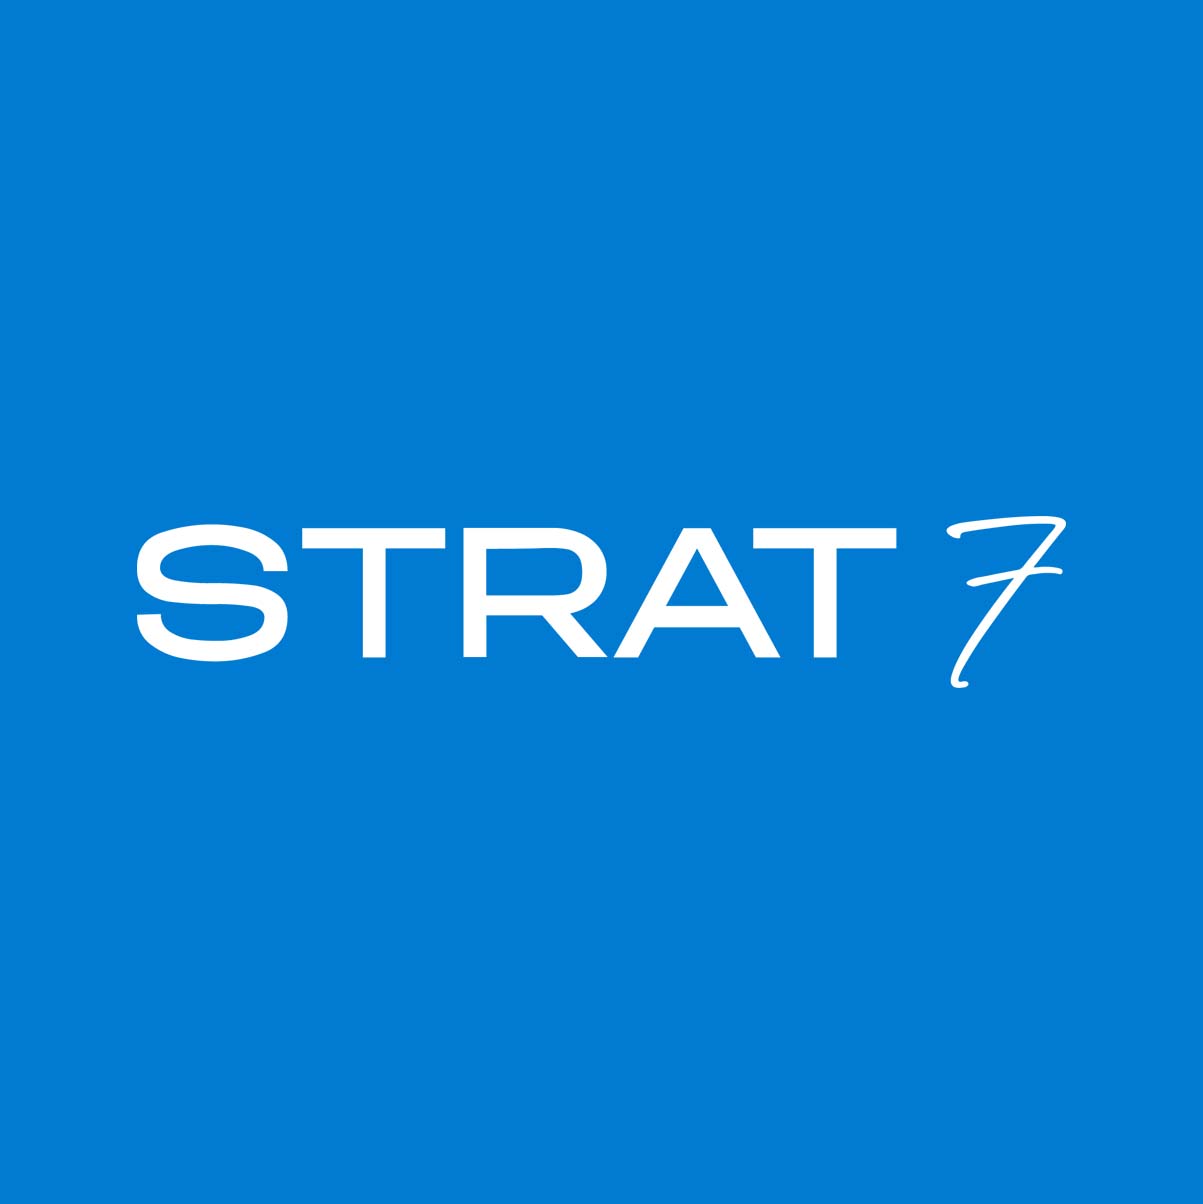 Strat7 logo